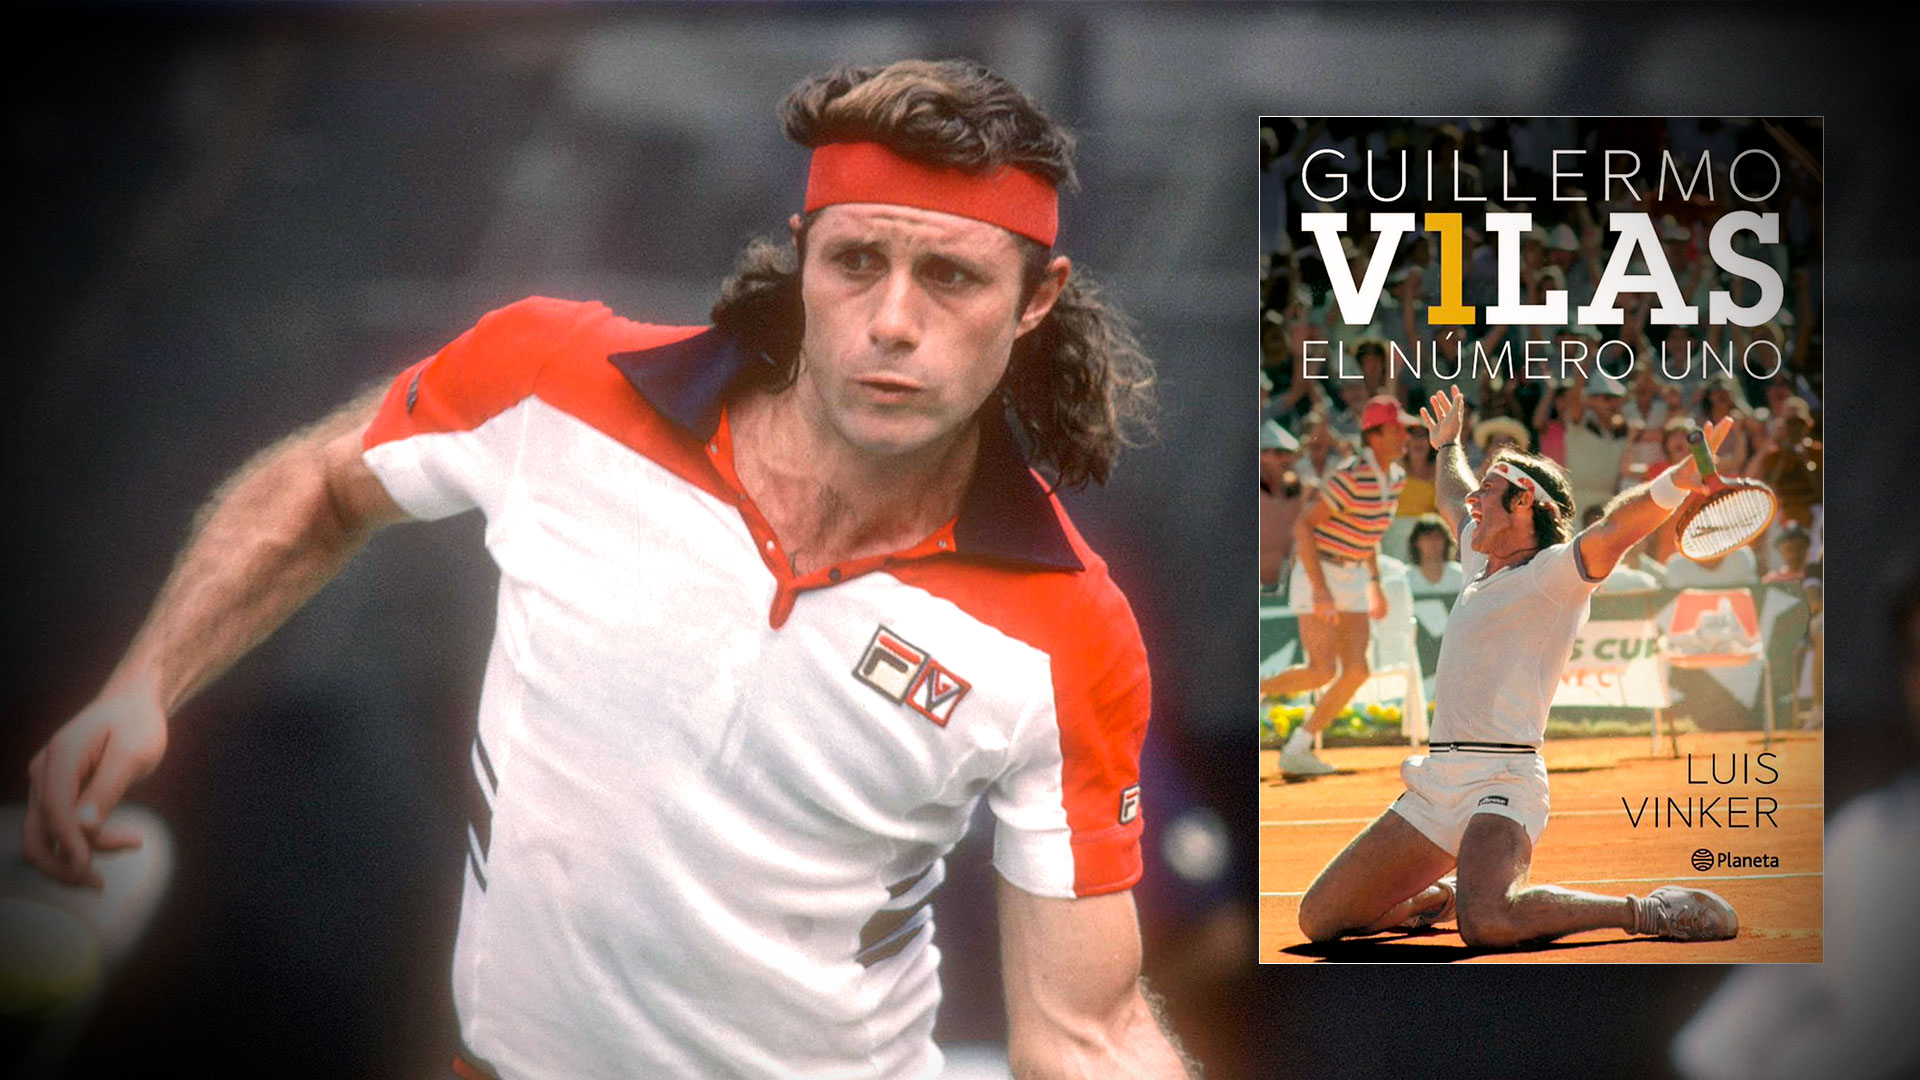 Guillermo Vilas: la intimidad del mítico partido que lo convirtió en “el mejor tenista del mundo”